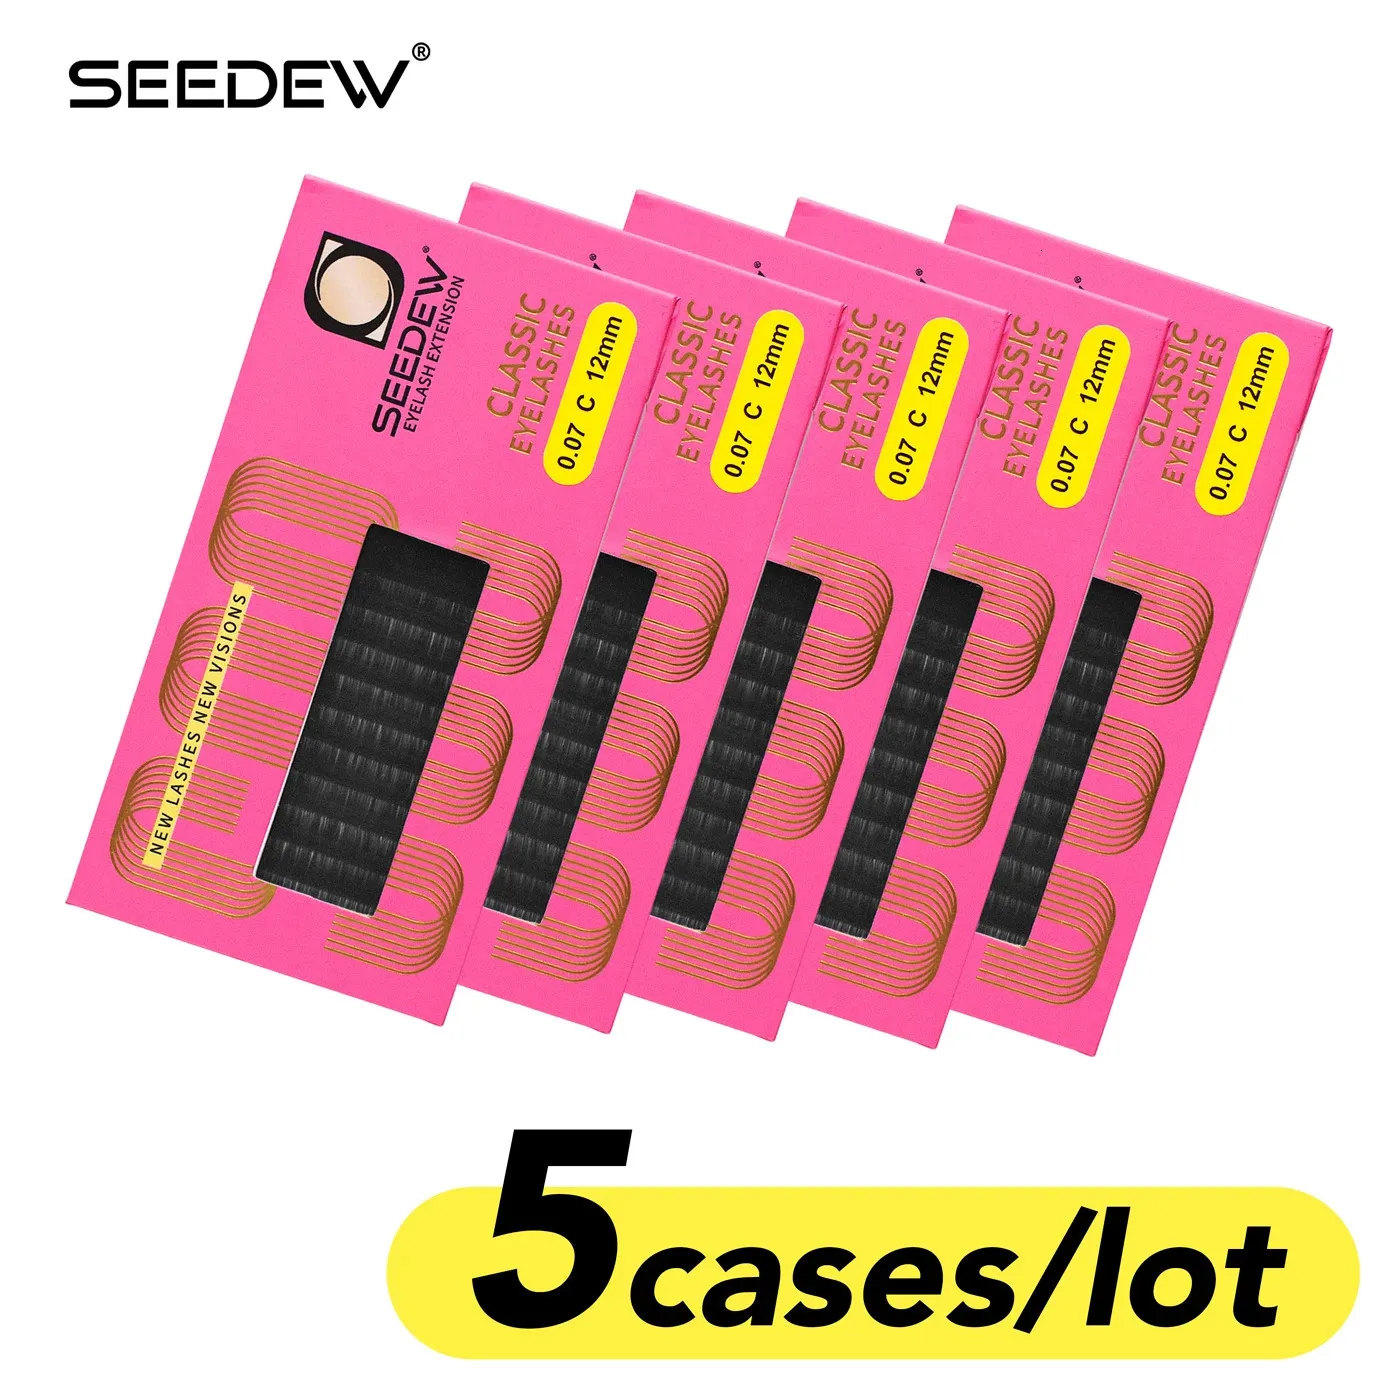 Seedew 5cases/lot faux lash個々のクラシックまつげメイクアップまつげエクステンションマットブラックスーパーソフト231227